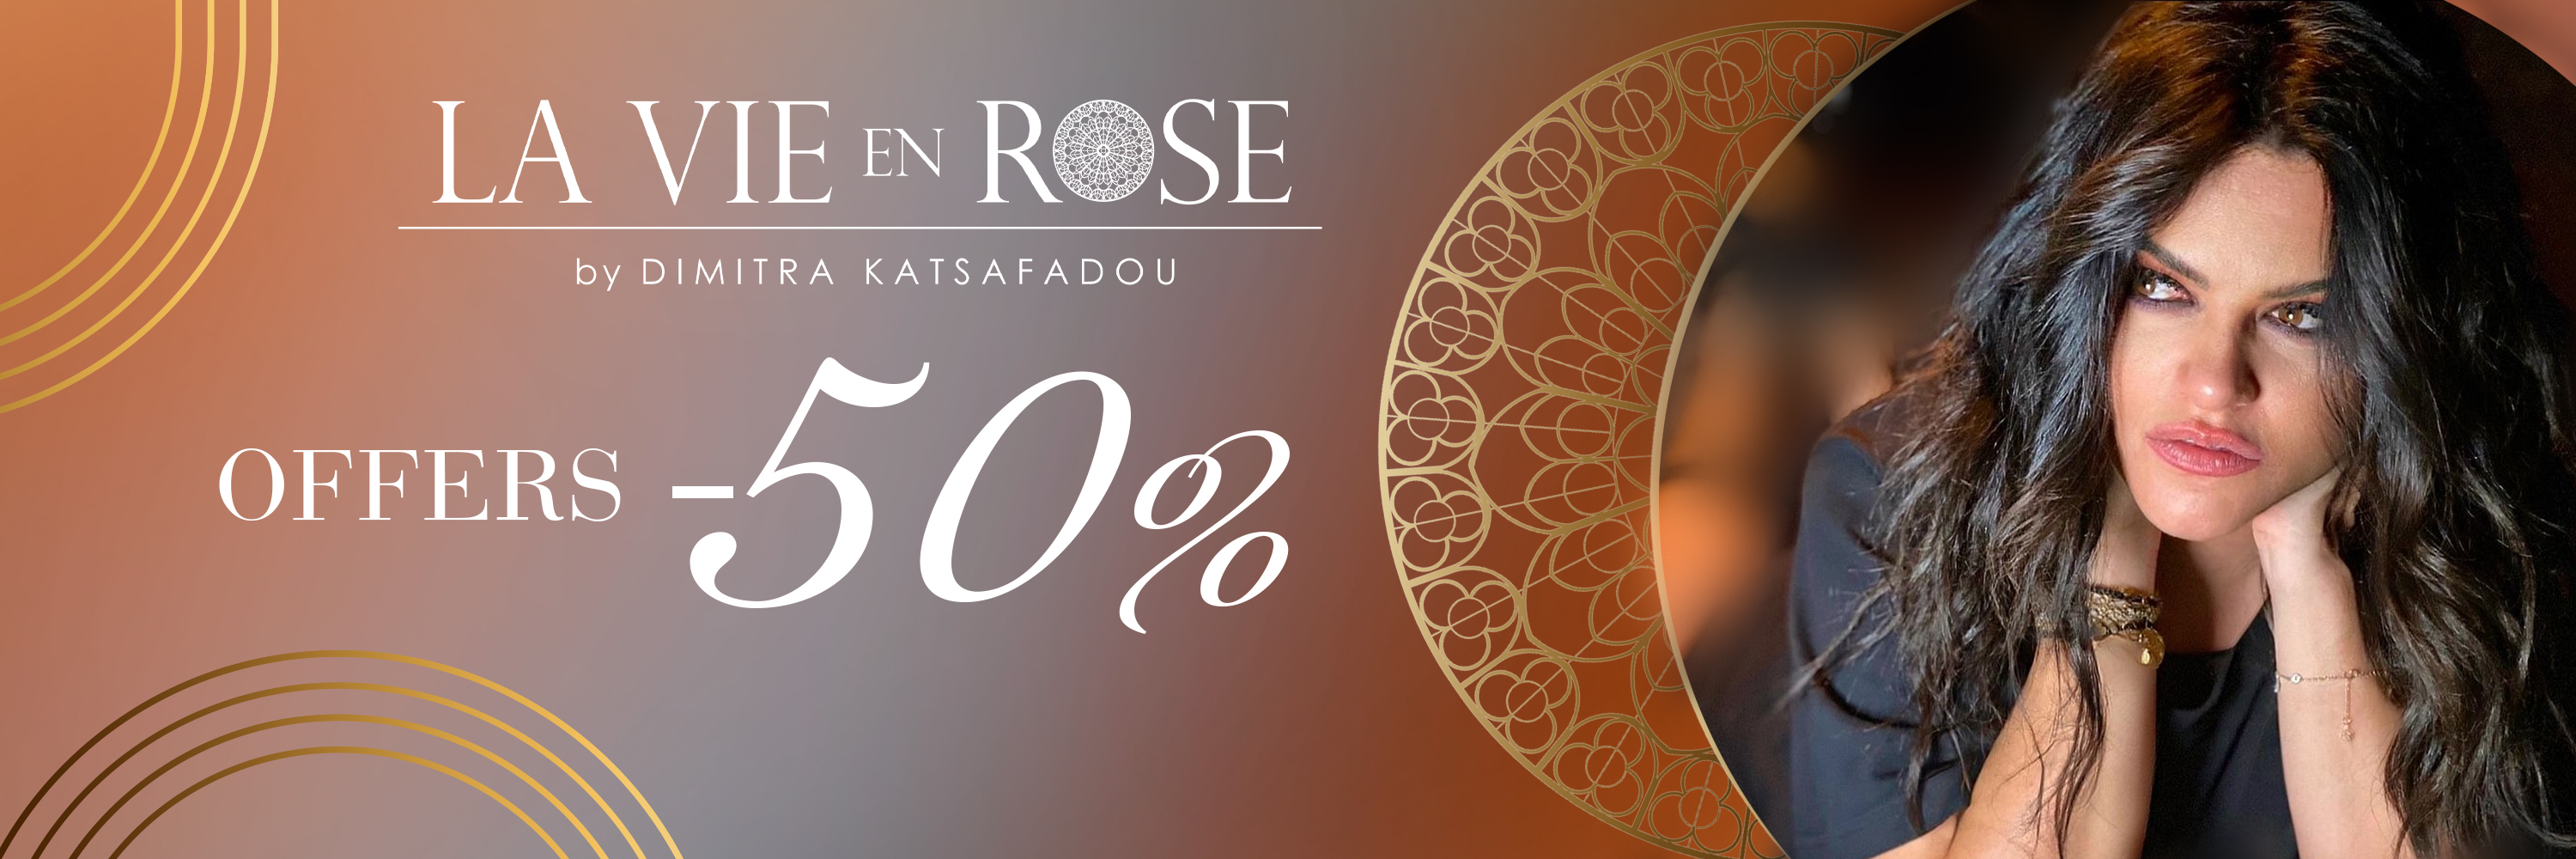 Offers -50% La Vie en Rose